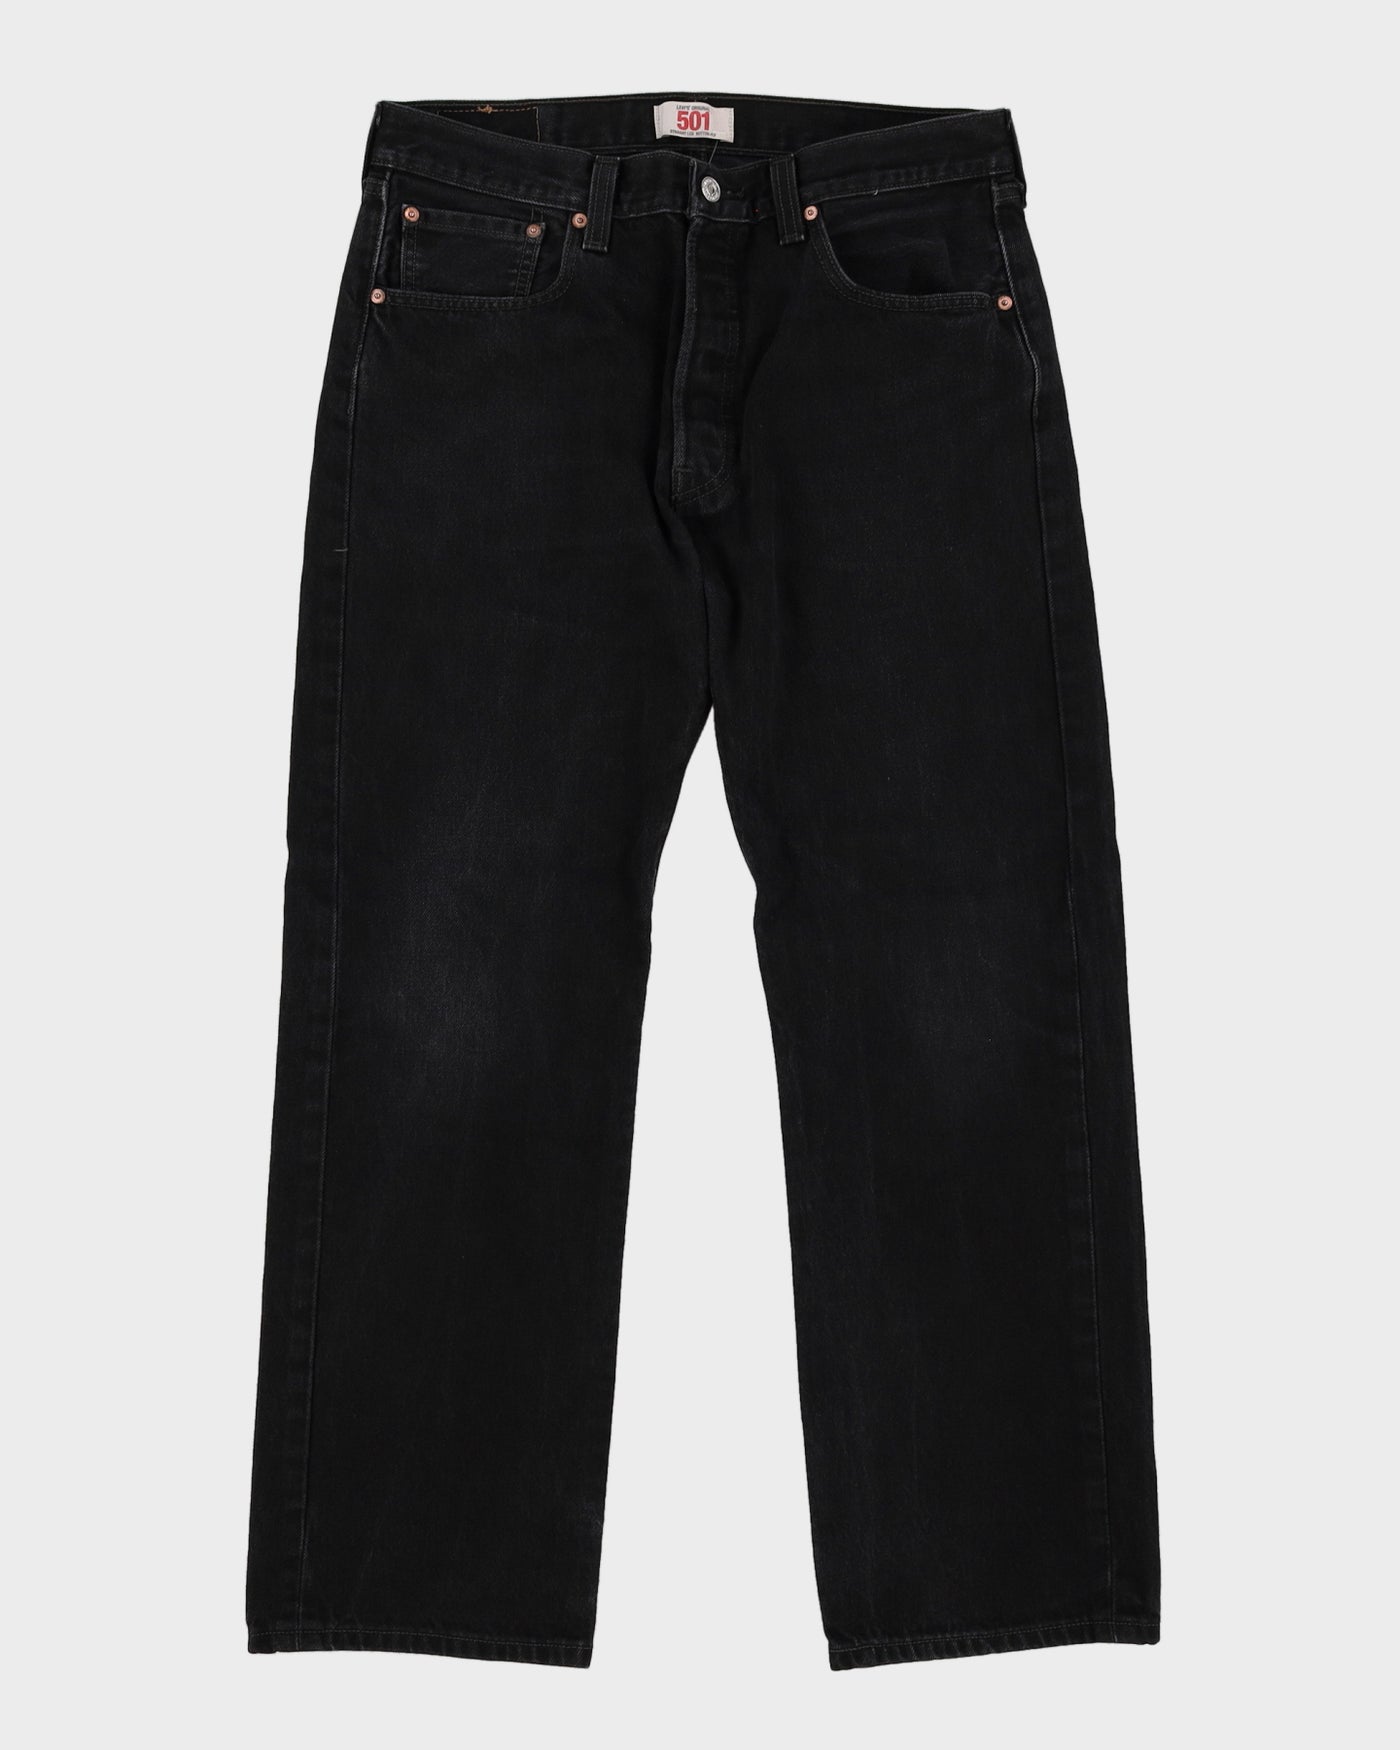 Levi's 501 Dark Wash Jeans - W33 L30